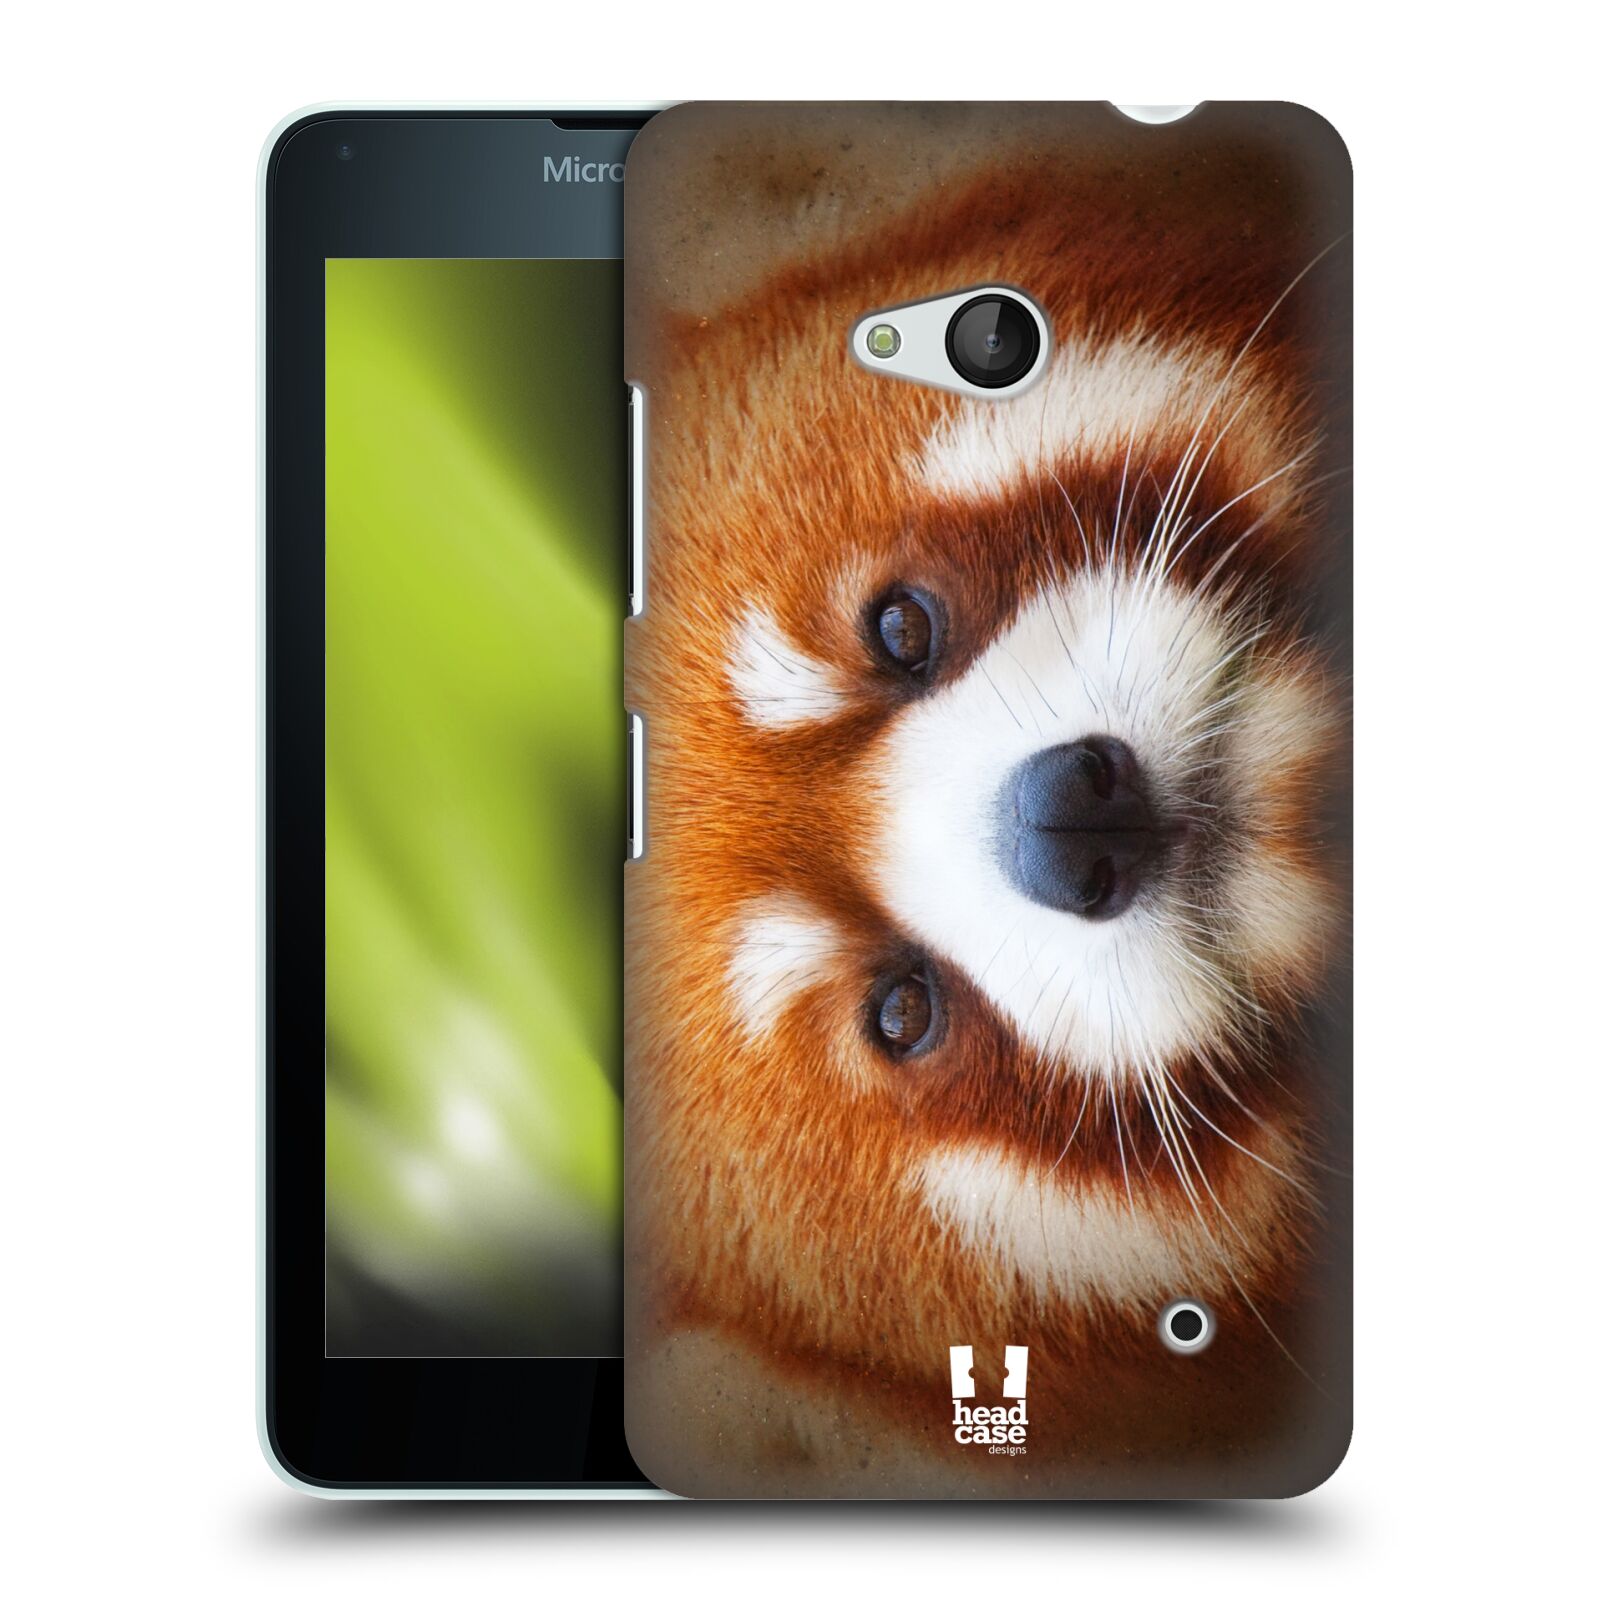 HEAD CASE plastový obal na mobil Nokia Lumia 640 vzor Zvířecí tváře 2 medvěd panda rudá